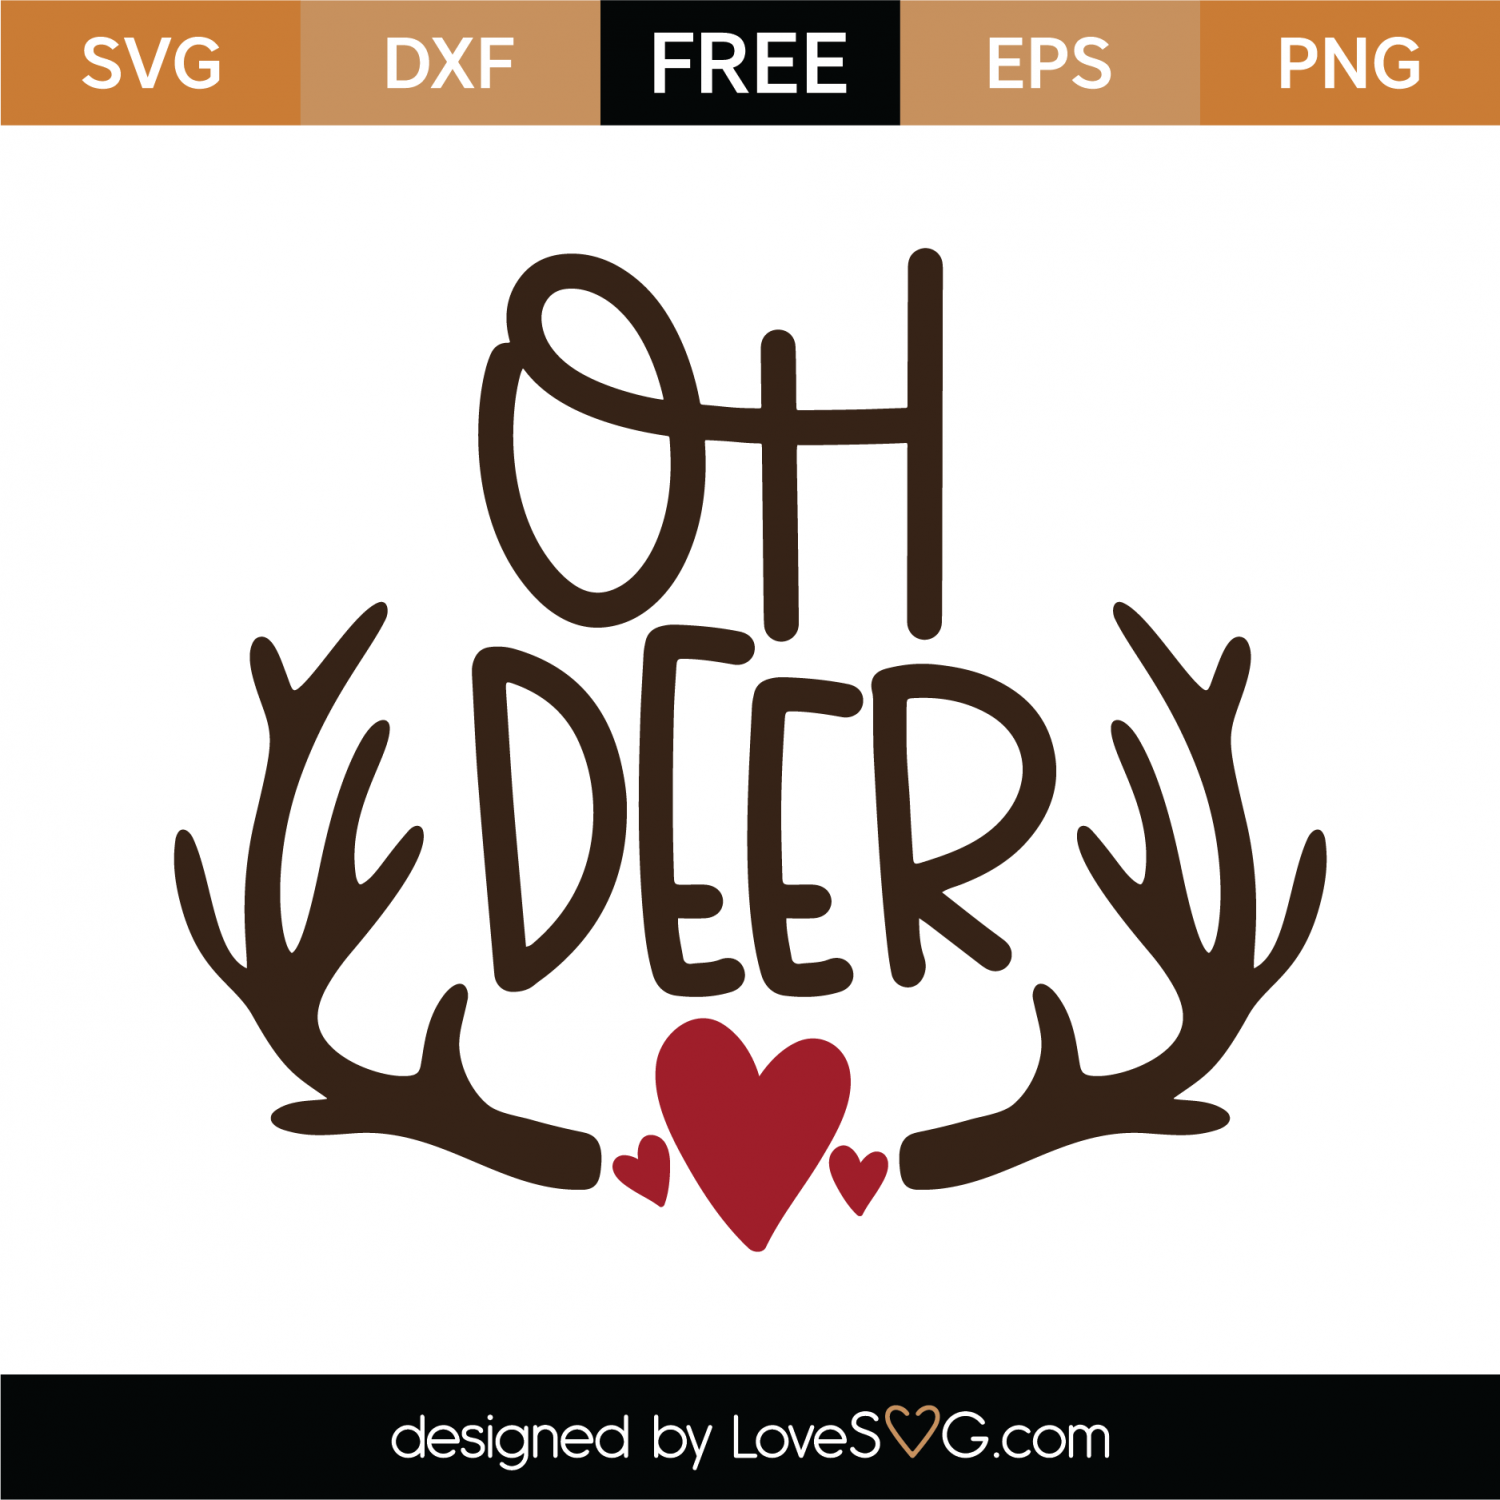 Download Free Oh Deer SVG Cut File | Lovesvg.com